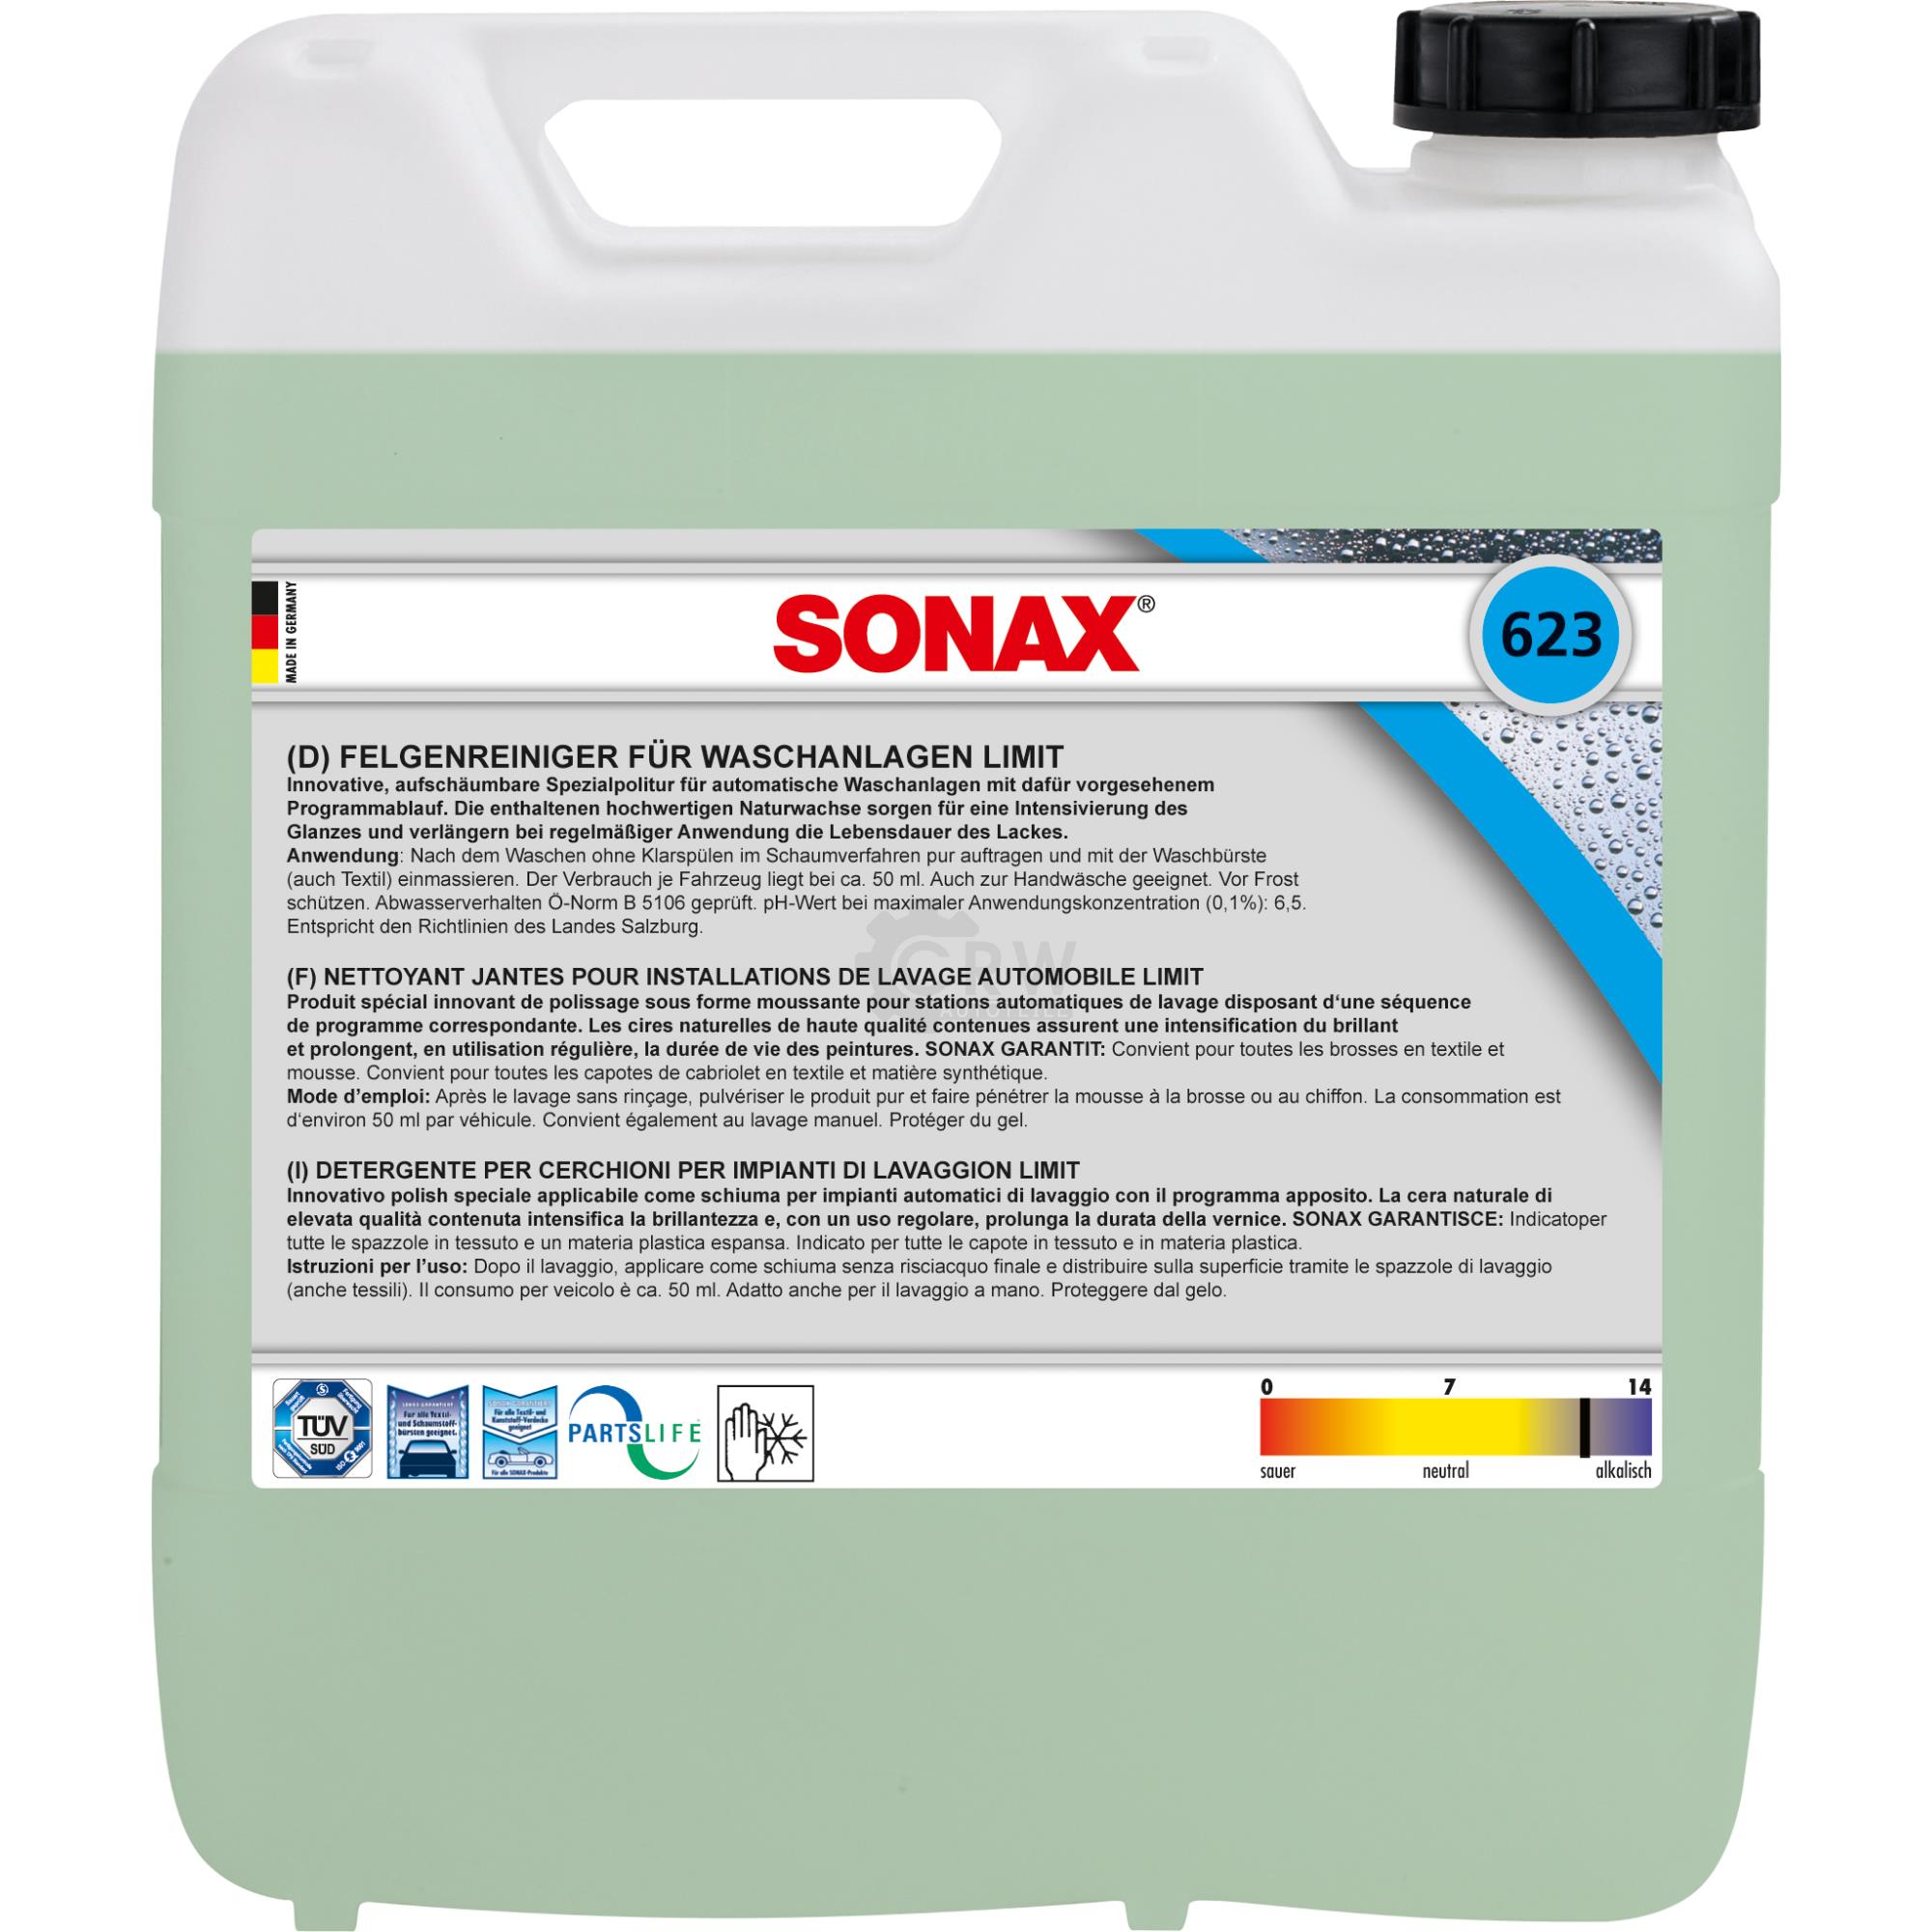 SONAX FelgenReiniger für Waschanlagen säurefrei schaumintensiv 10 Liter